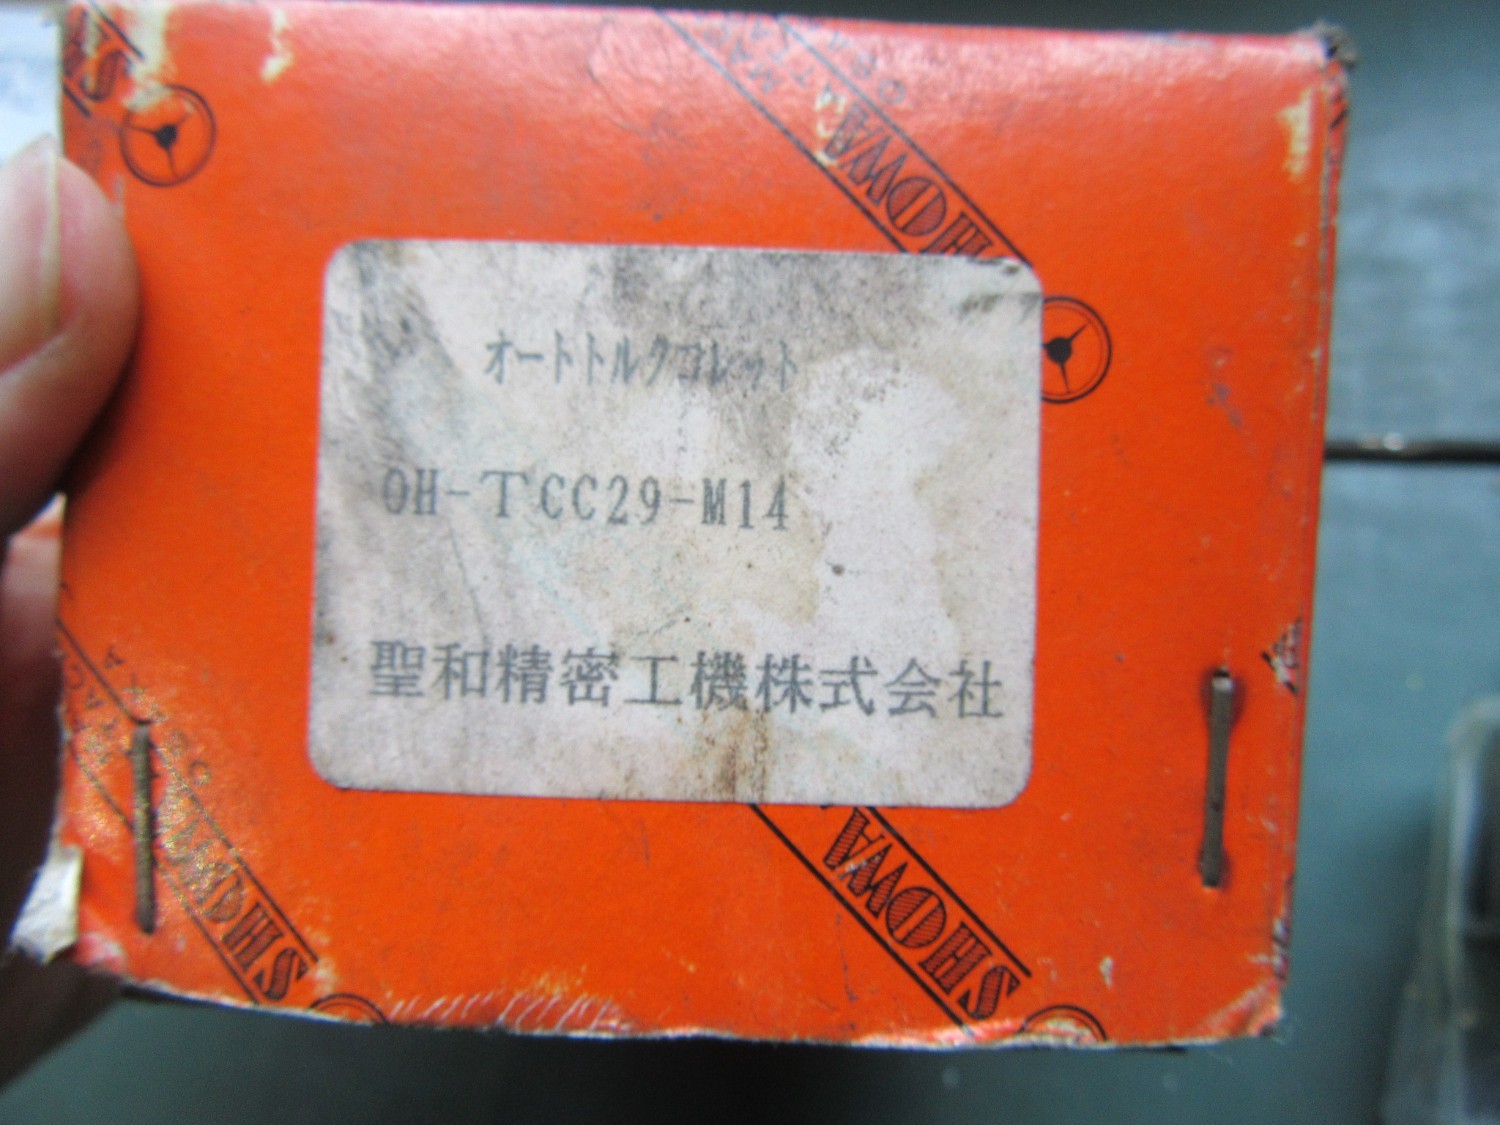 中古Tap collet 【タップコレット】OH-TCC29-M14 聖和精機/SHOWA